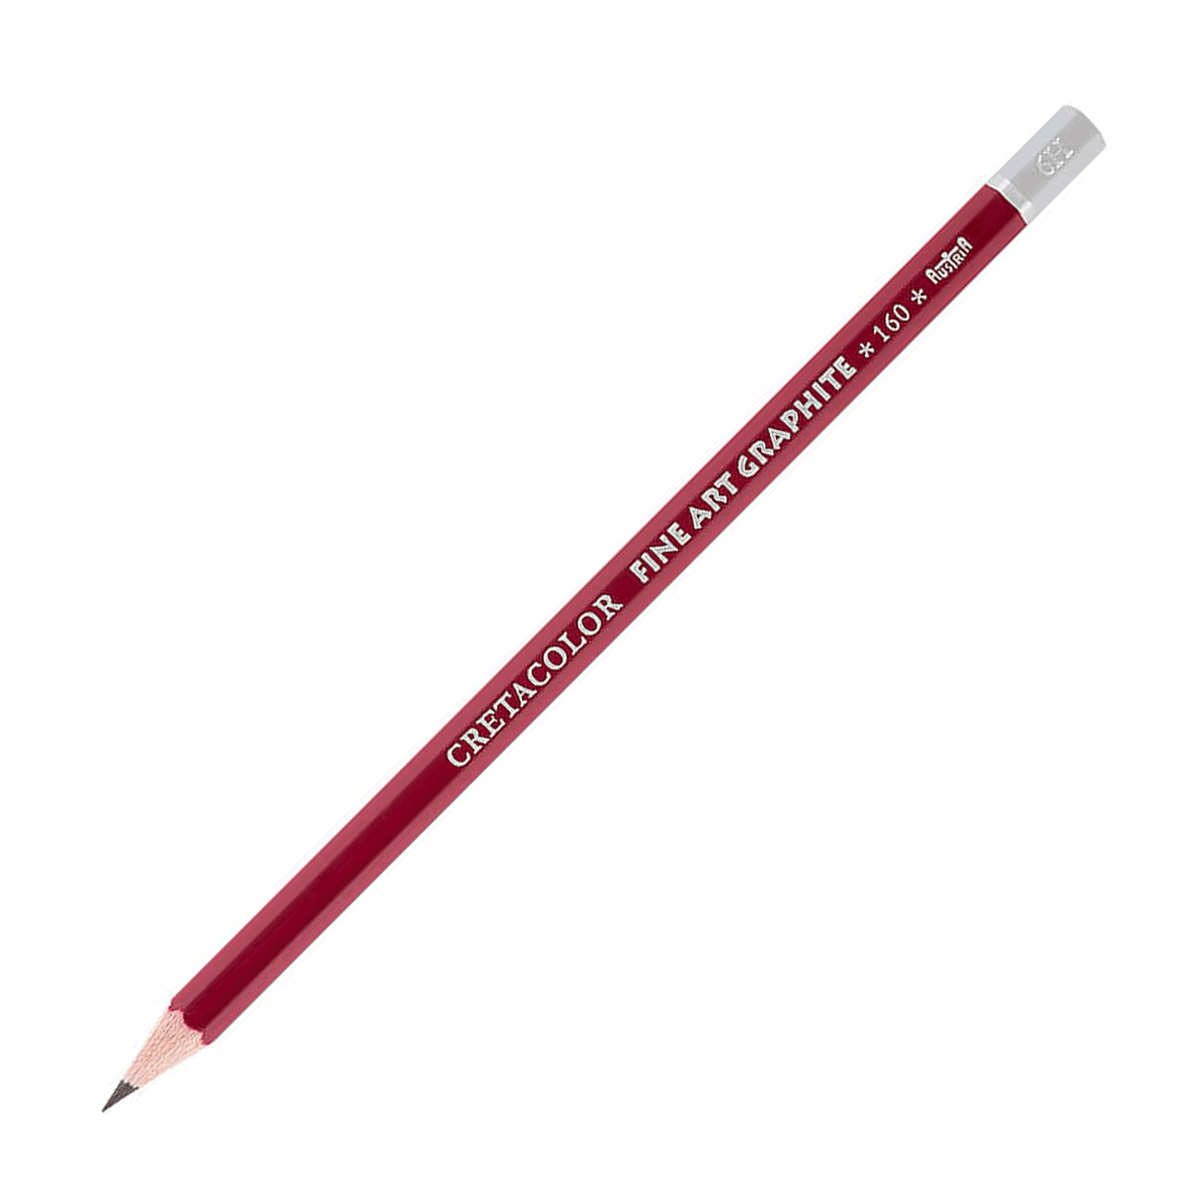 Cretacolor Fine Art Red Graphite Pencil - 6H